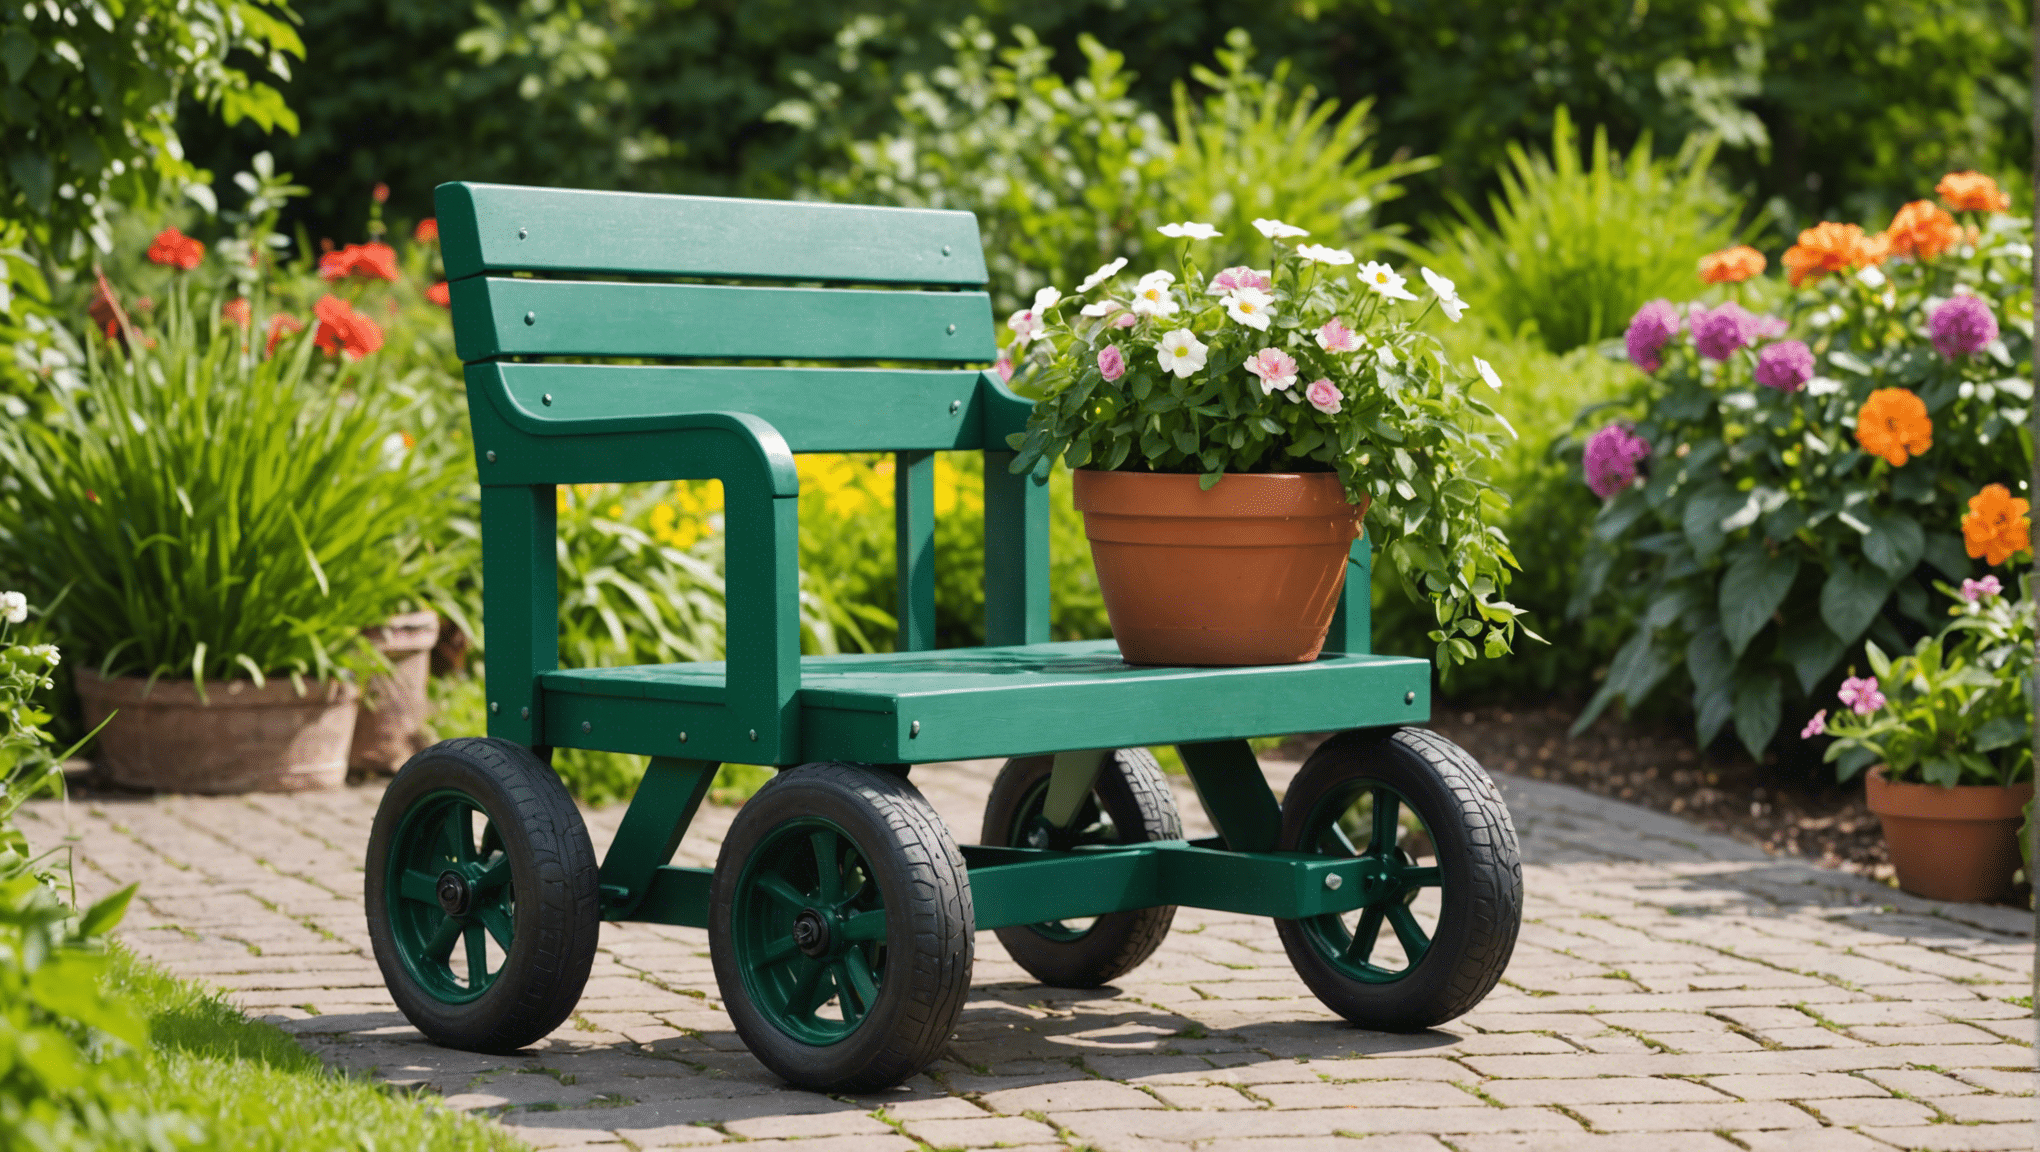 Entdecken Sie die Vorteile einer Investition in einen Gartensitz mit Rädern und verwandeln Sie Ihr Gartenerlebnis. Finden Sie heraus, wie dieses vielseitige Werkzeug Ihren Komfort und Ihre Produktivität im Garten steigern kann.